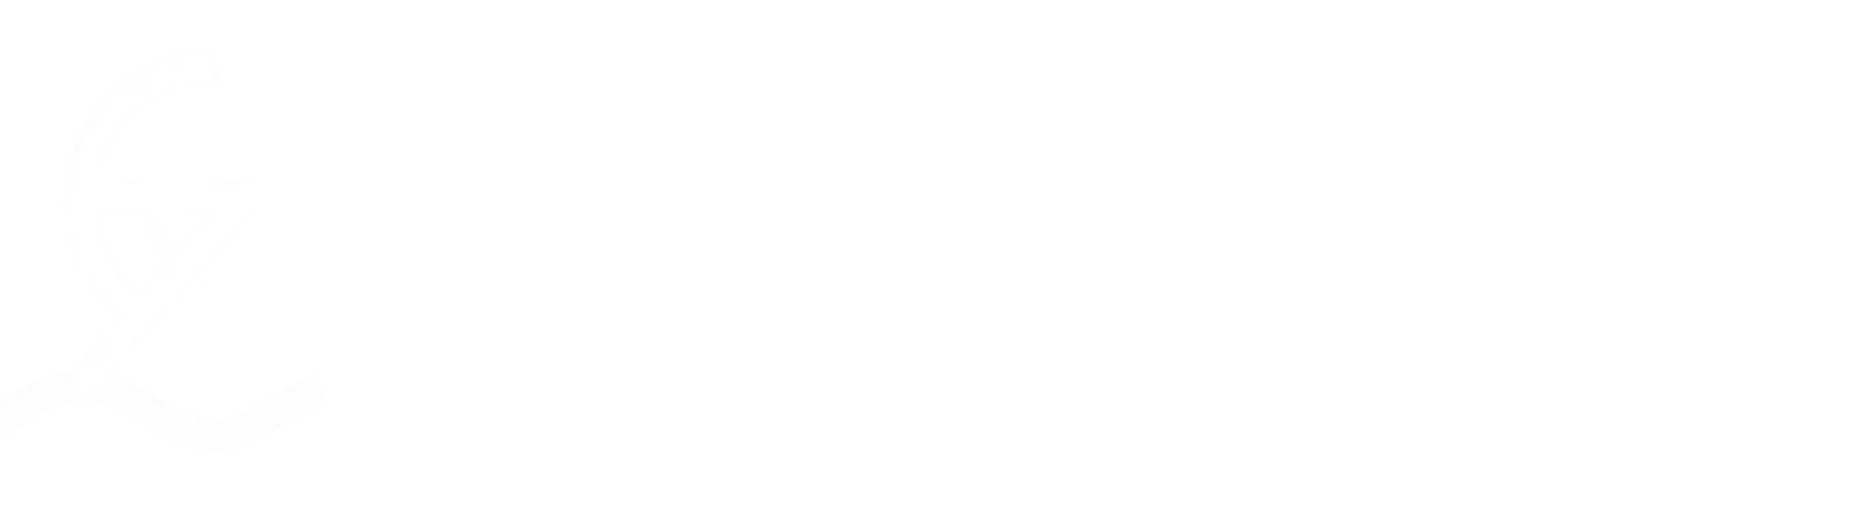 Gonitzoggo Community